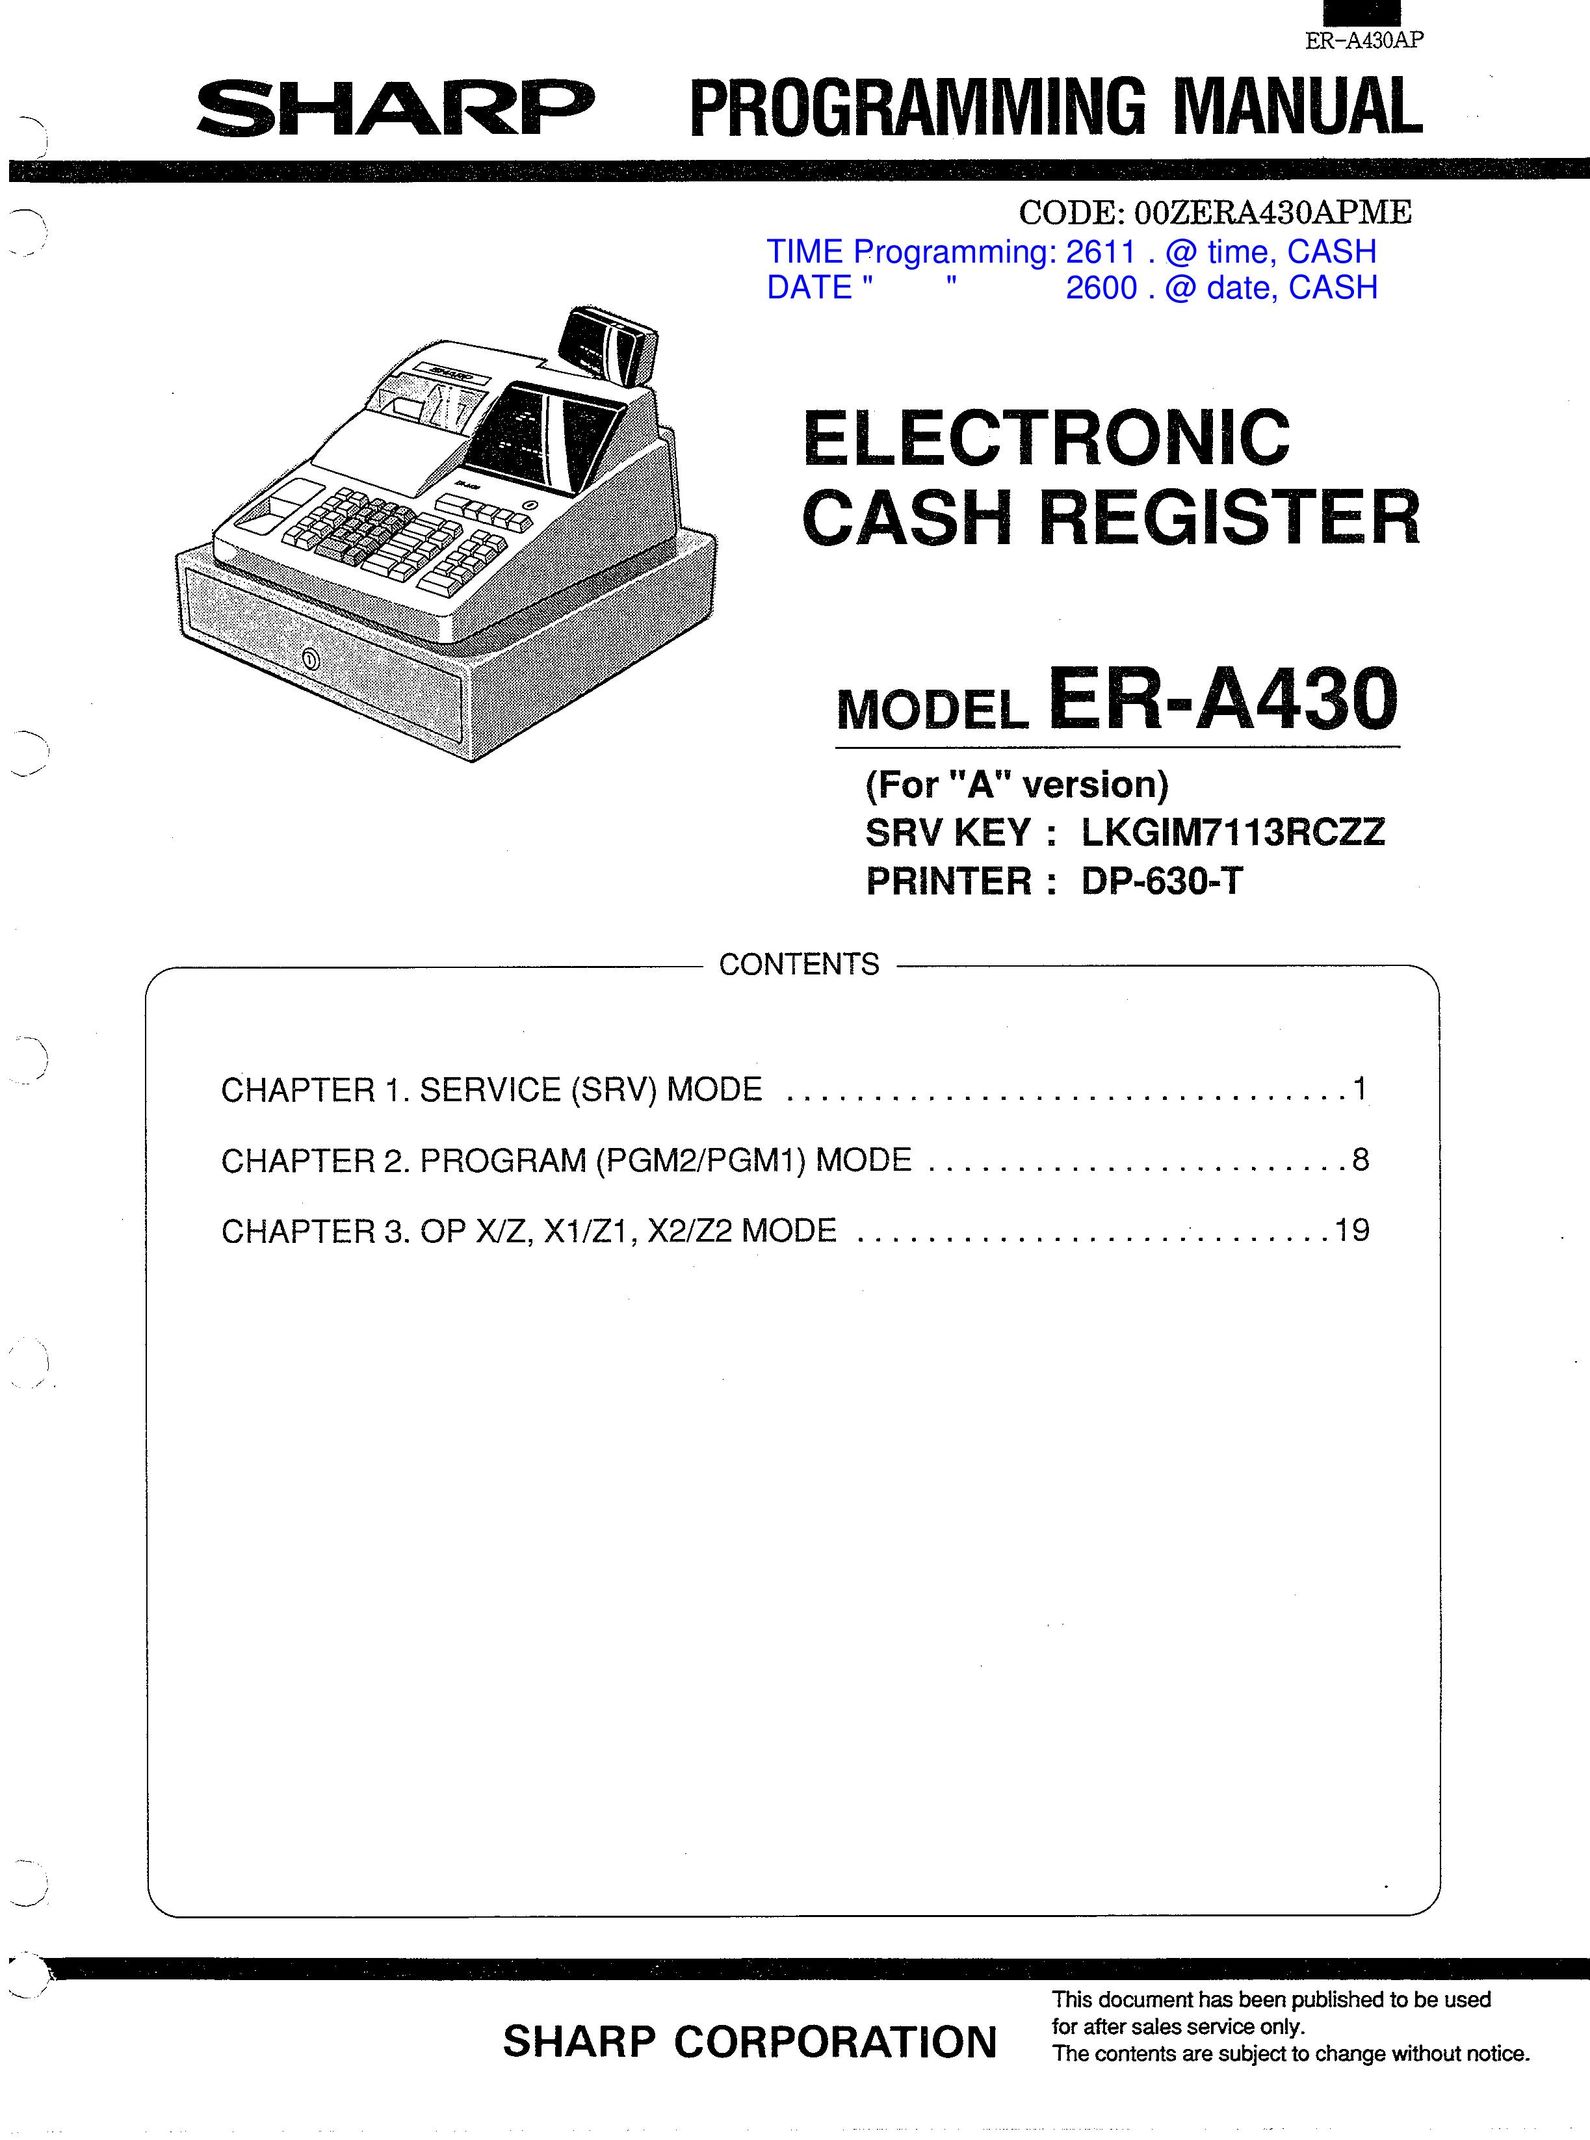 Sharp ER-A430 Cash Register User Manual